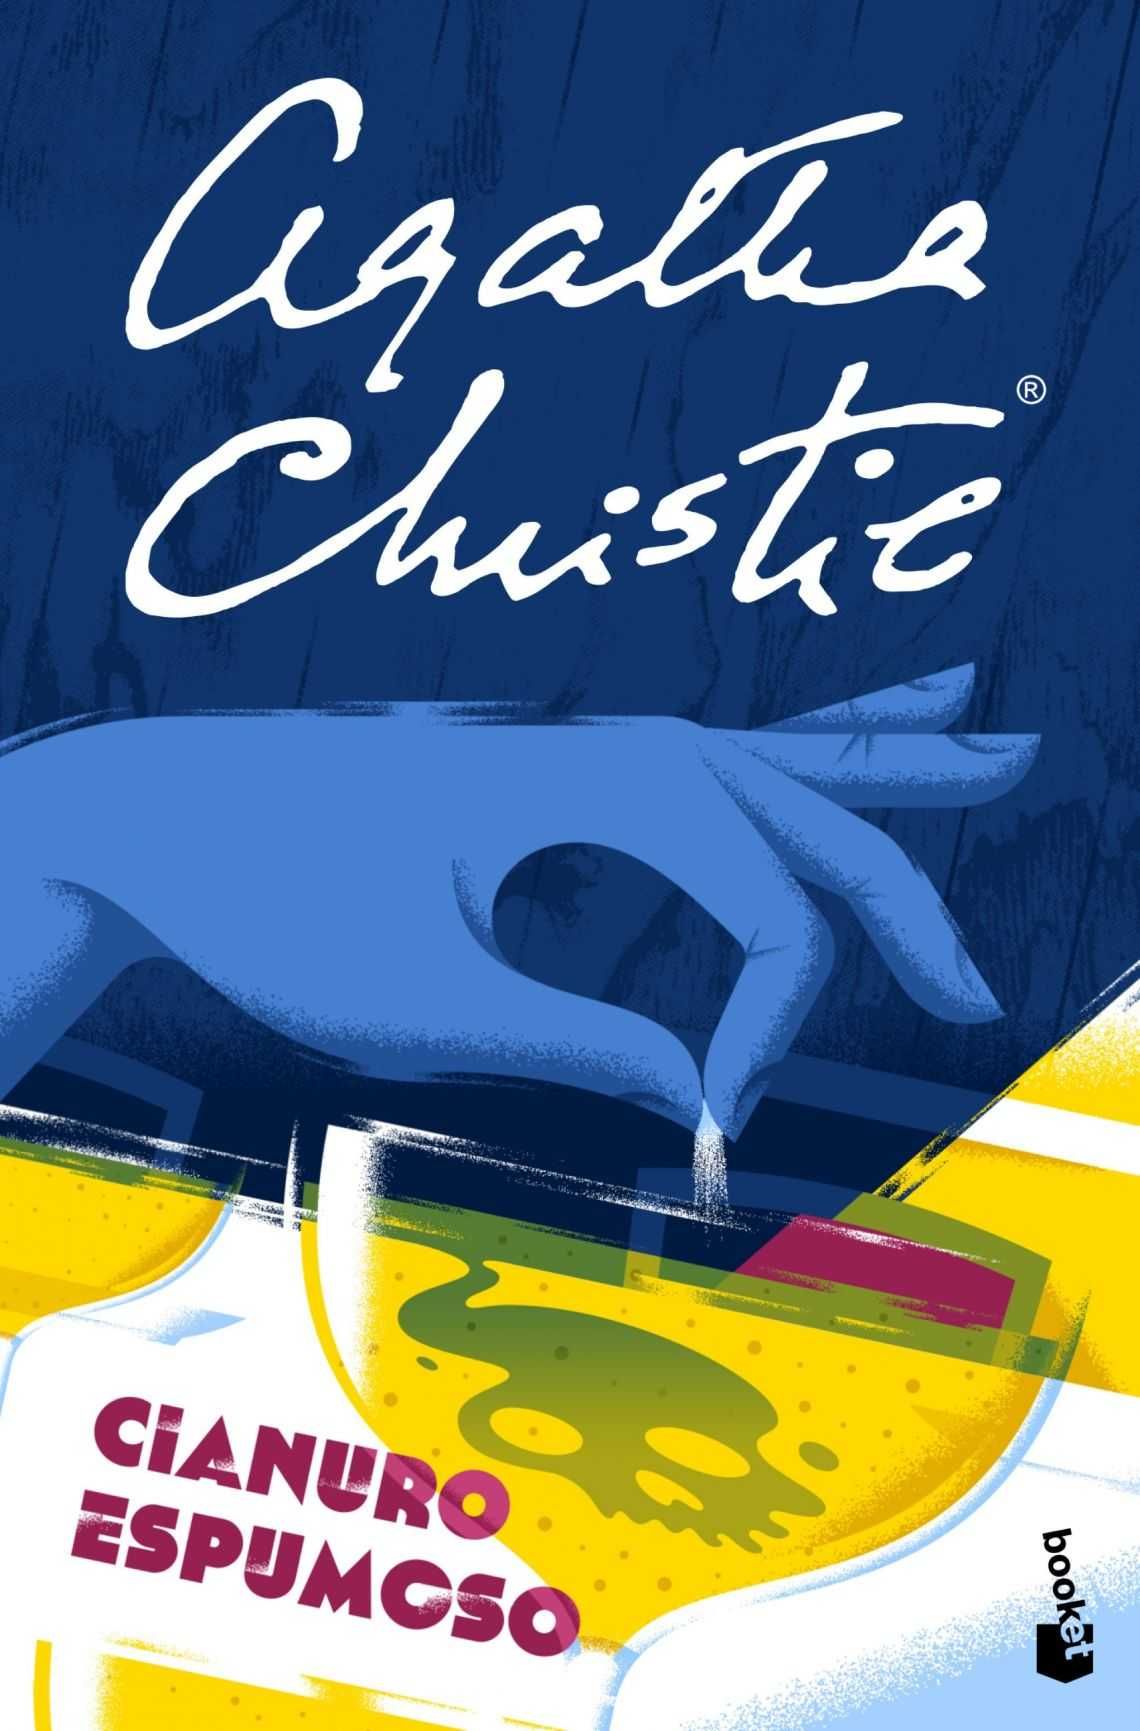 Agatha Christie en el cine, teatro y relato breve_cianuro_espumoso